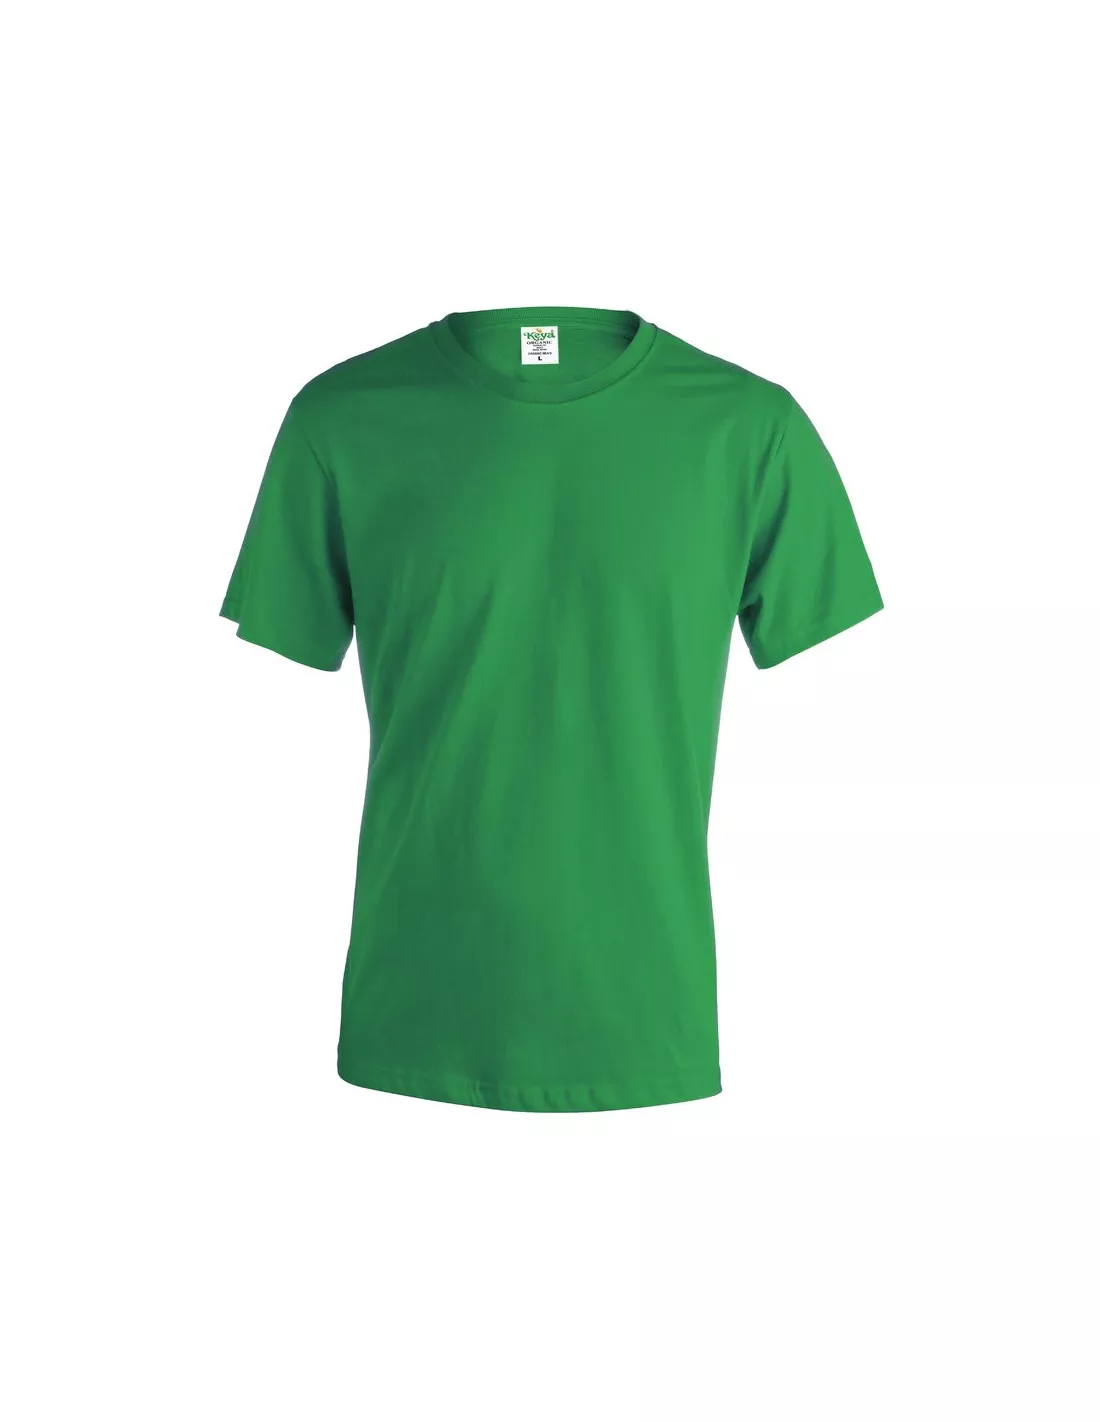 Camiseta Keya de algodón orgánico 150gr.